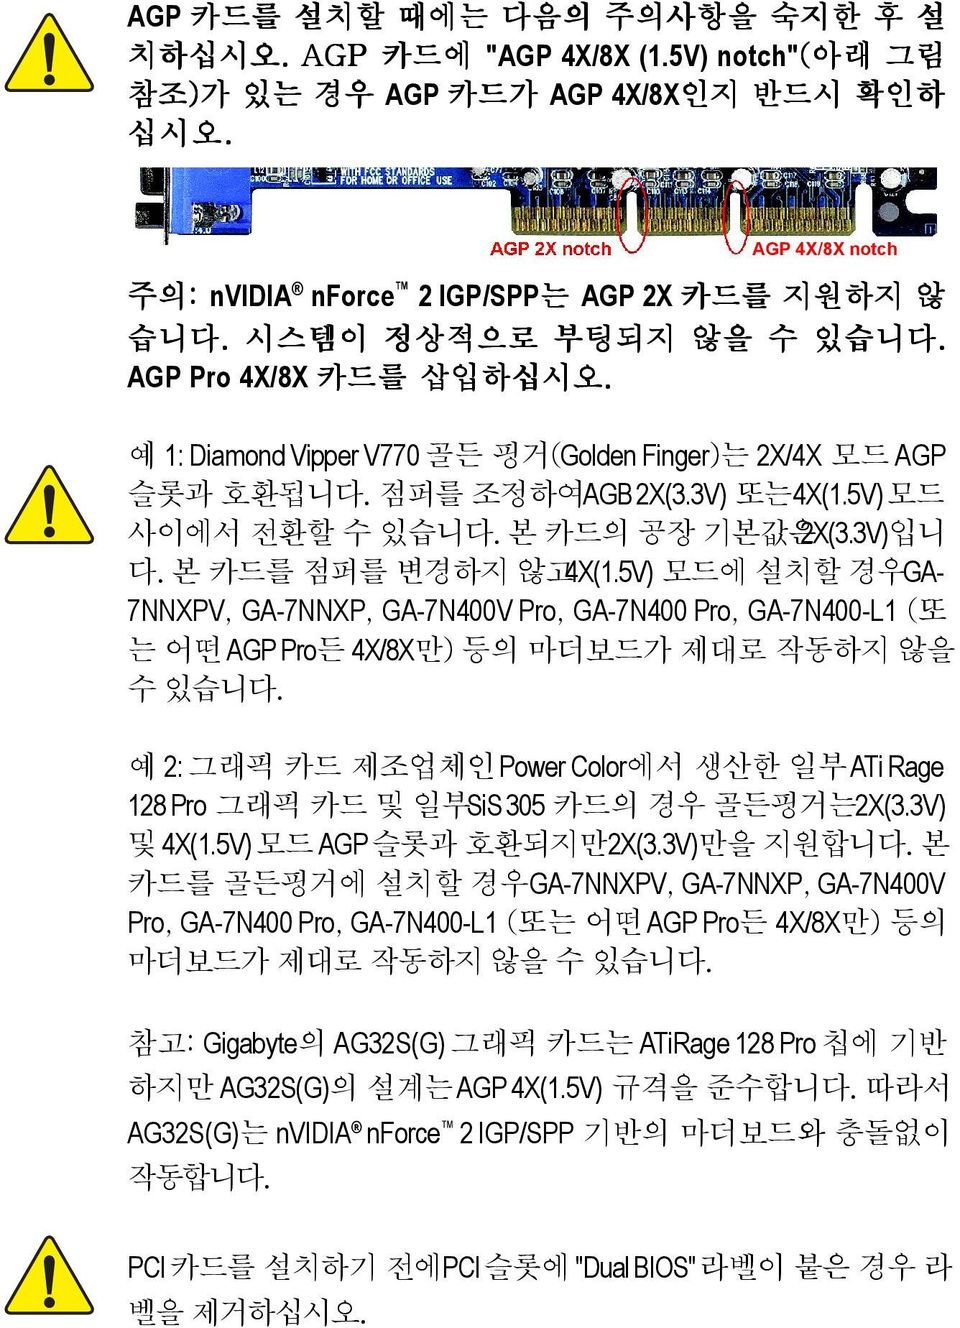 AGP AGB 2X(3.3V) 4X(1.